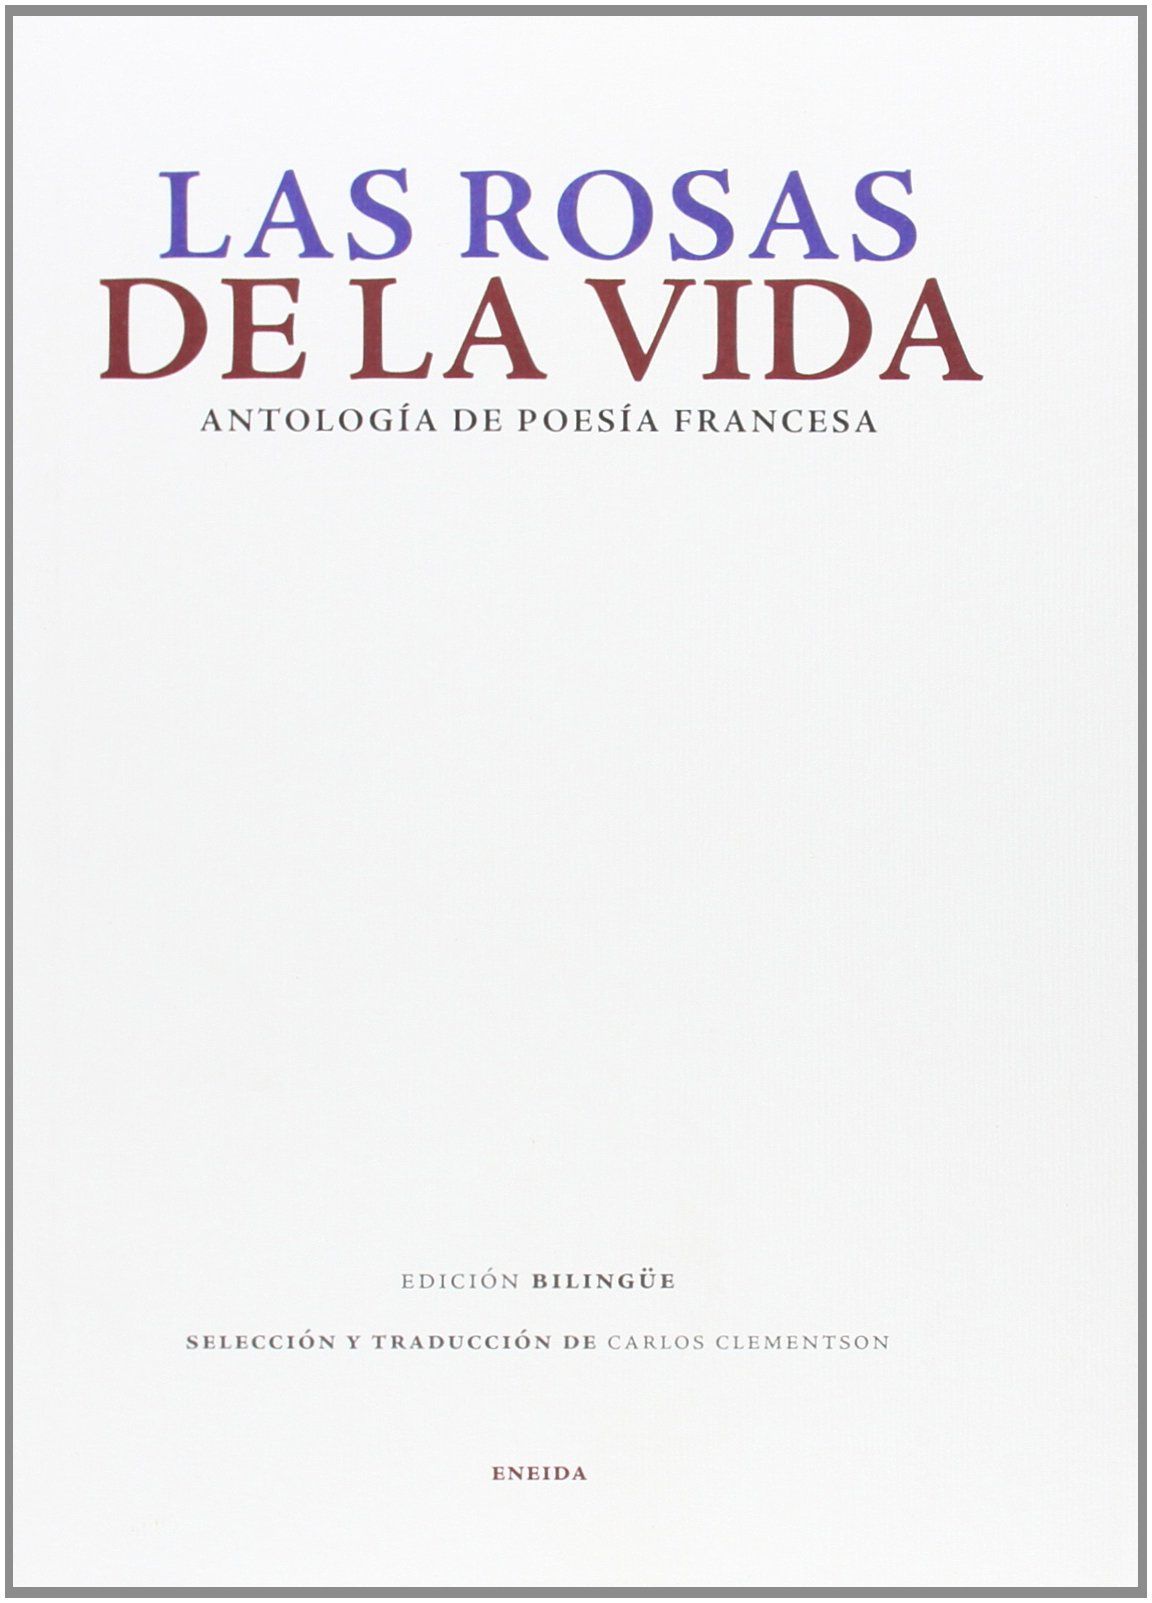 ANTOLOGIA DE POESÍA FRANCESA. ANTOLOGIA DE POESÍA FRANCESA. EDICIÓN BILINGÜE